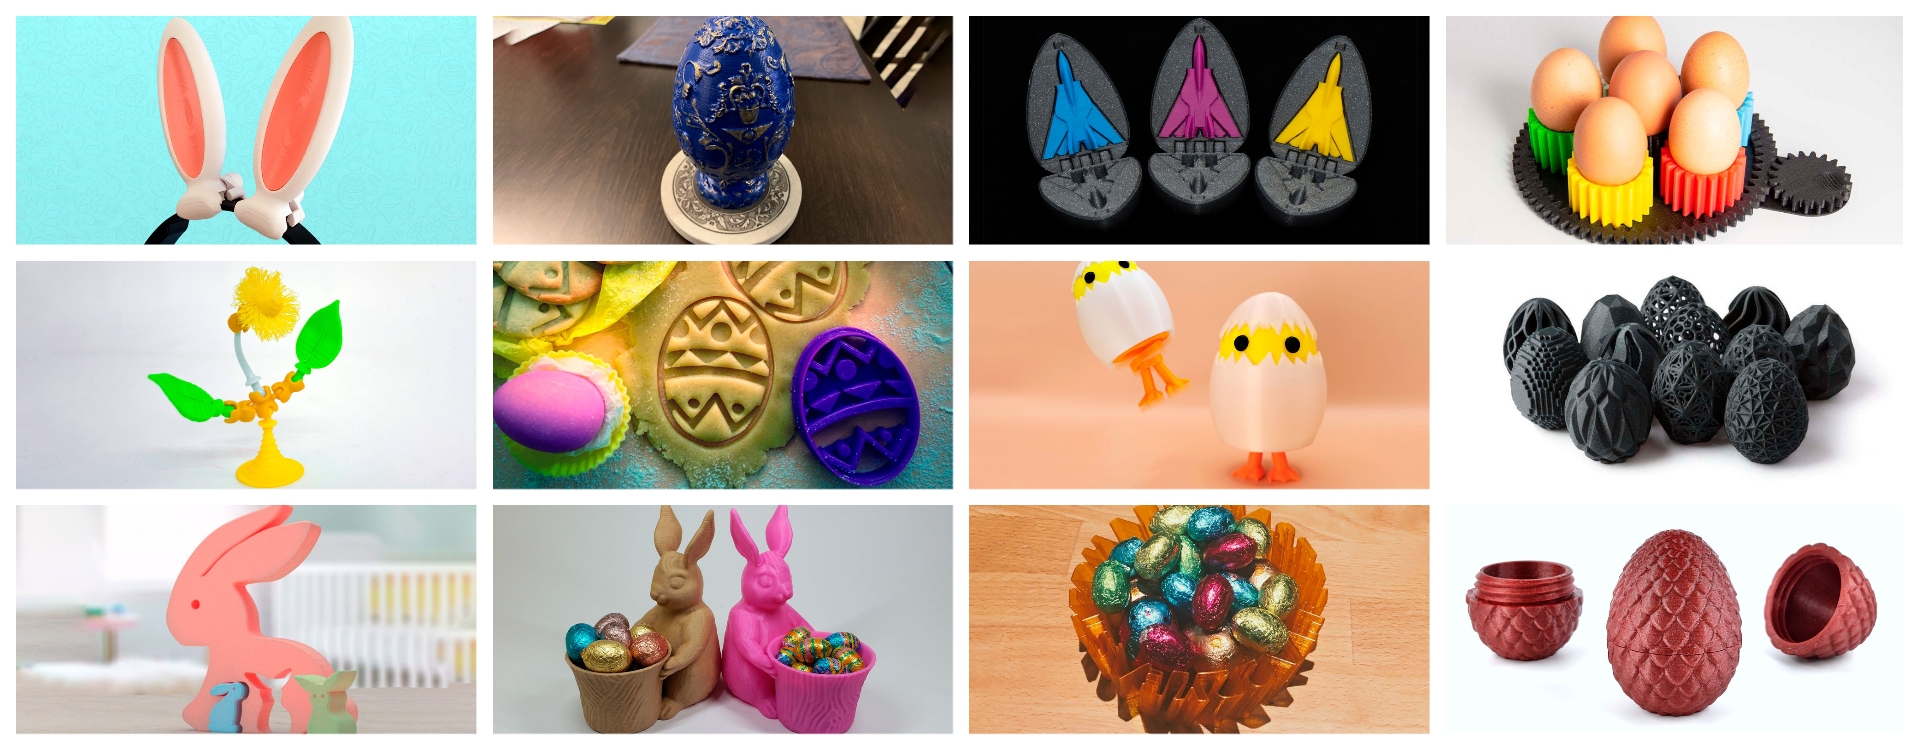 12 ідей для друку на 3D принтері до Великодня: безкоштовні моделі для прикраси свята.